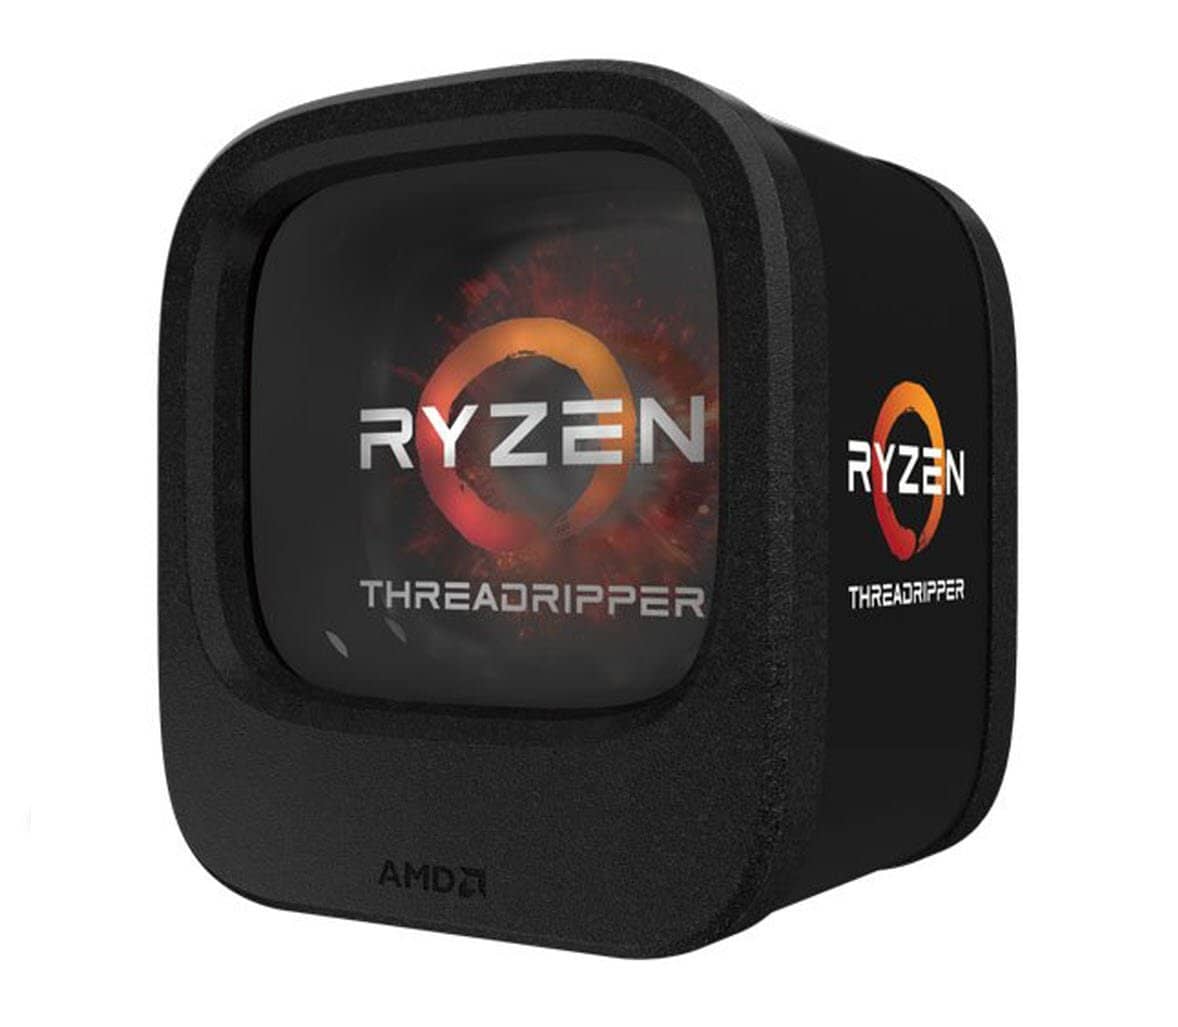 AMD Ryzen Threadripper 1920X (12-core/24-thread) Desktop Processor (YD192XA8AEWOF) and GIGABYTE X399 AORUS Gaming 7